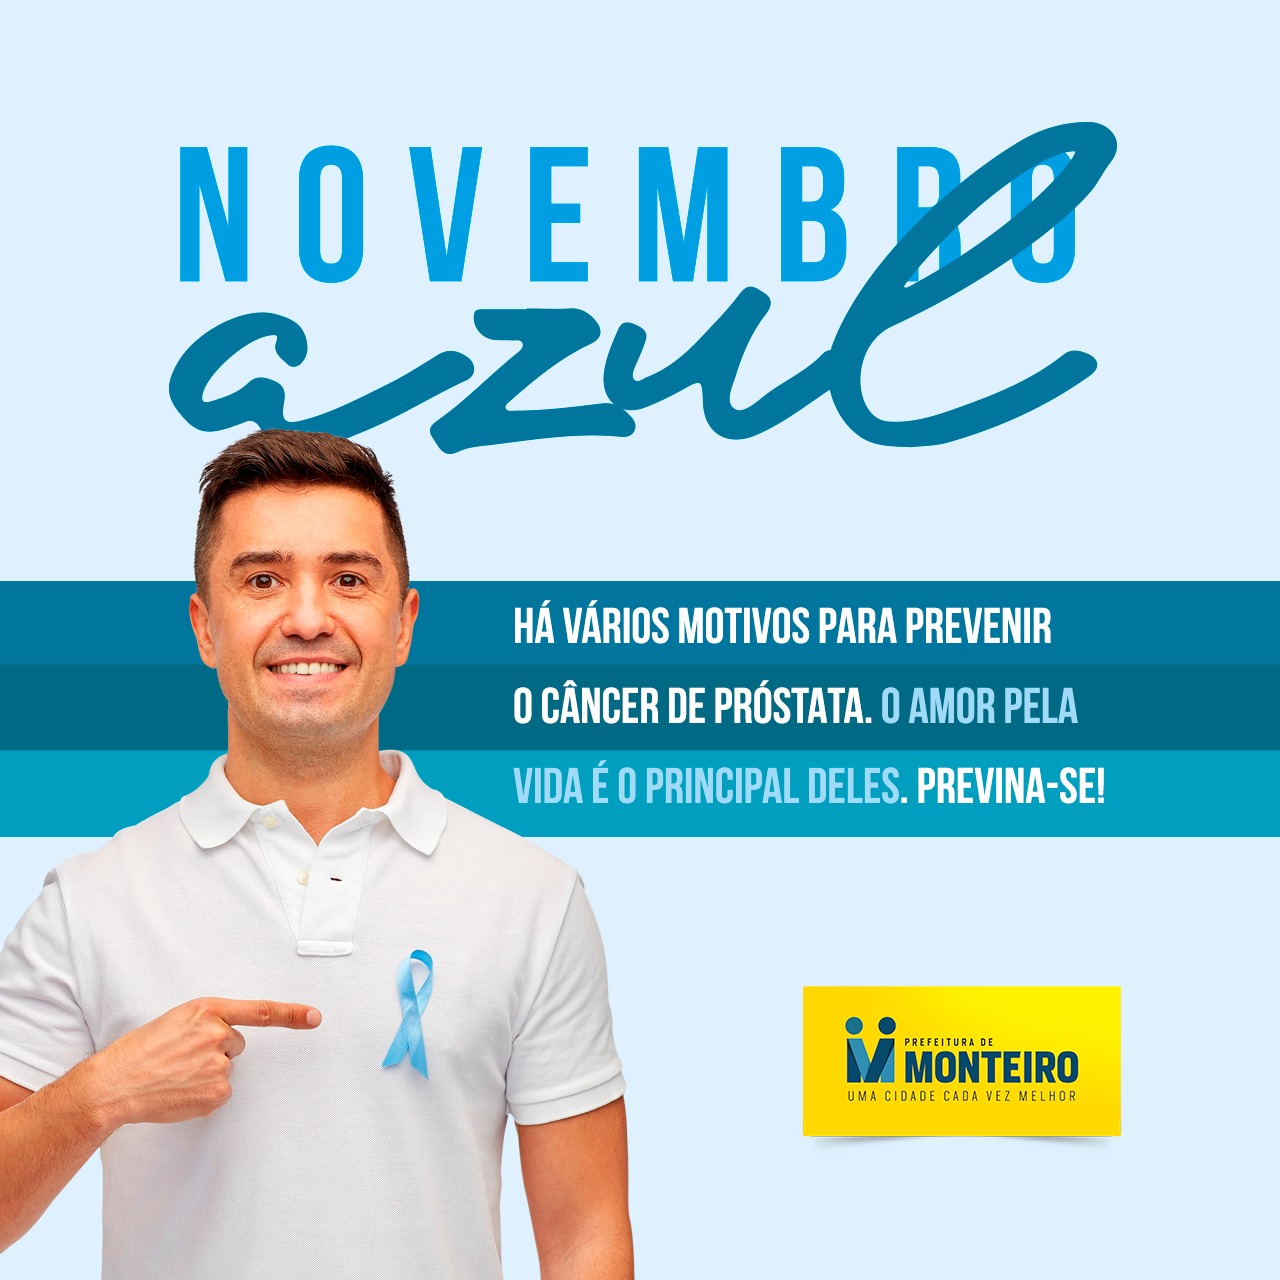 6f46fc46-5839-4907-a575-60aa62fa1b8b Novembro Azul: Prefeitura de Monteiro faz campanha contra o câncer de próstata